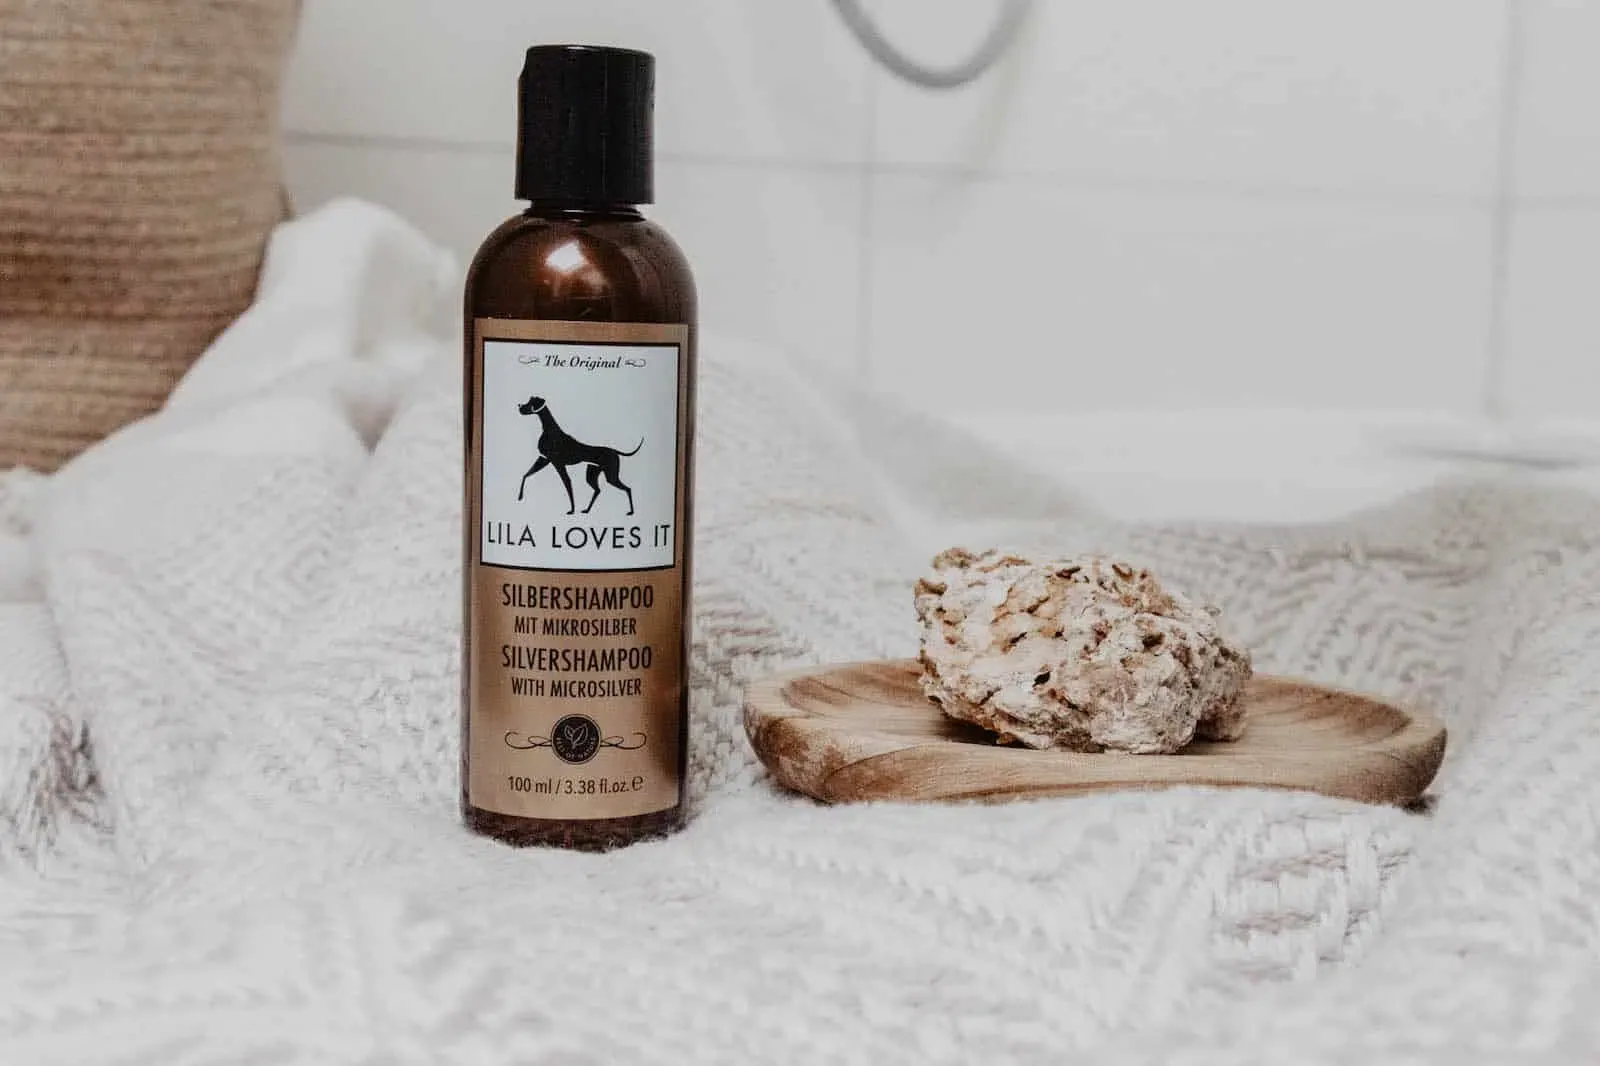 Kleine braune Flasche Shampoo für Hunde auf weißem Stickteppich neben einem Sandstein auf einer flachen Holzschale vor weißen Badezimmer Fliesen | LILA LOVES IT "Silbershampoo"